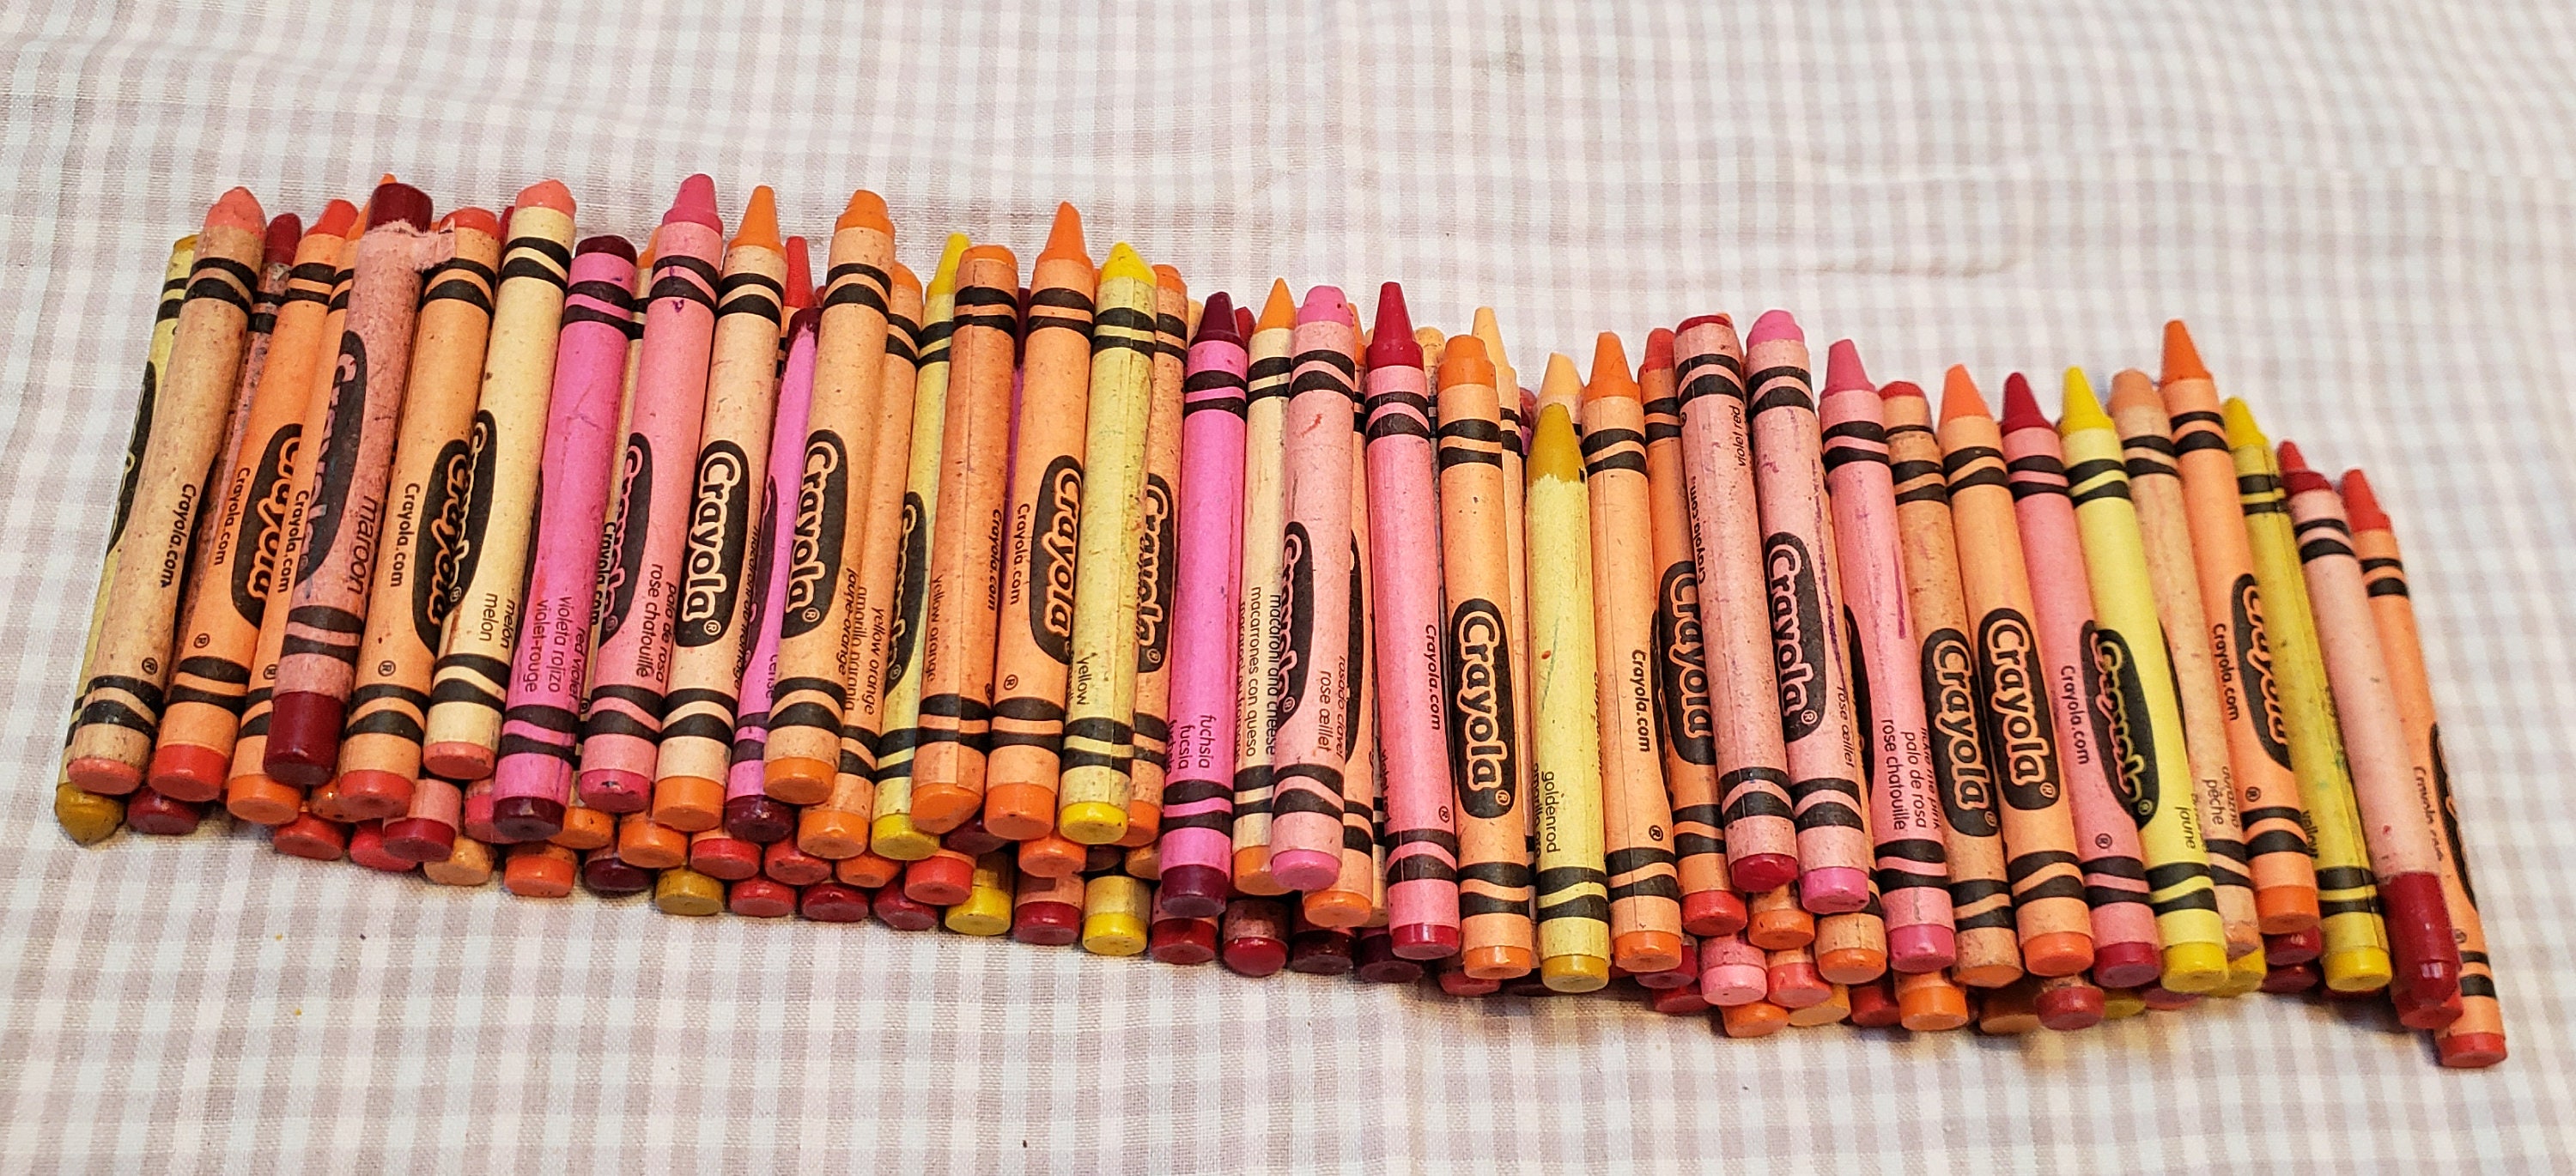 Jumbo Crayola Crayon 47” Huge Large Rare Yellow Advertisement